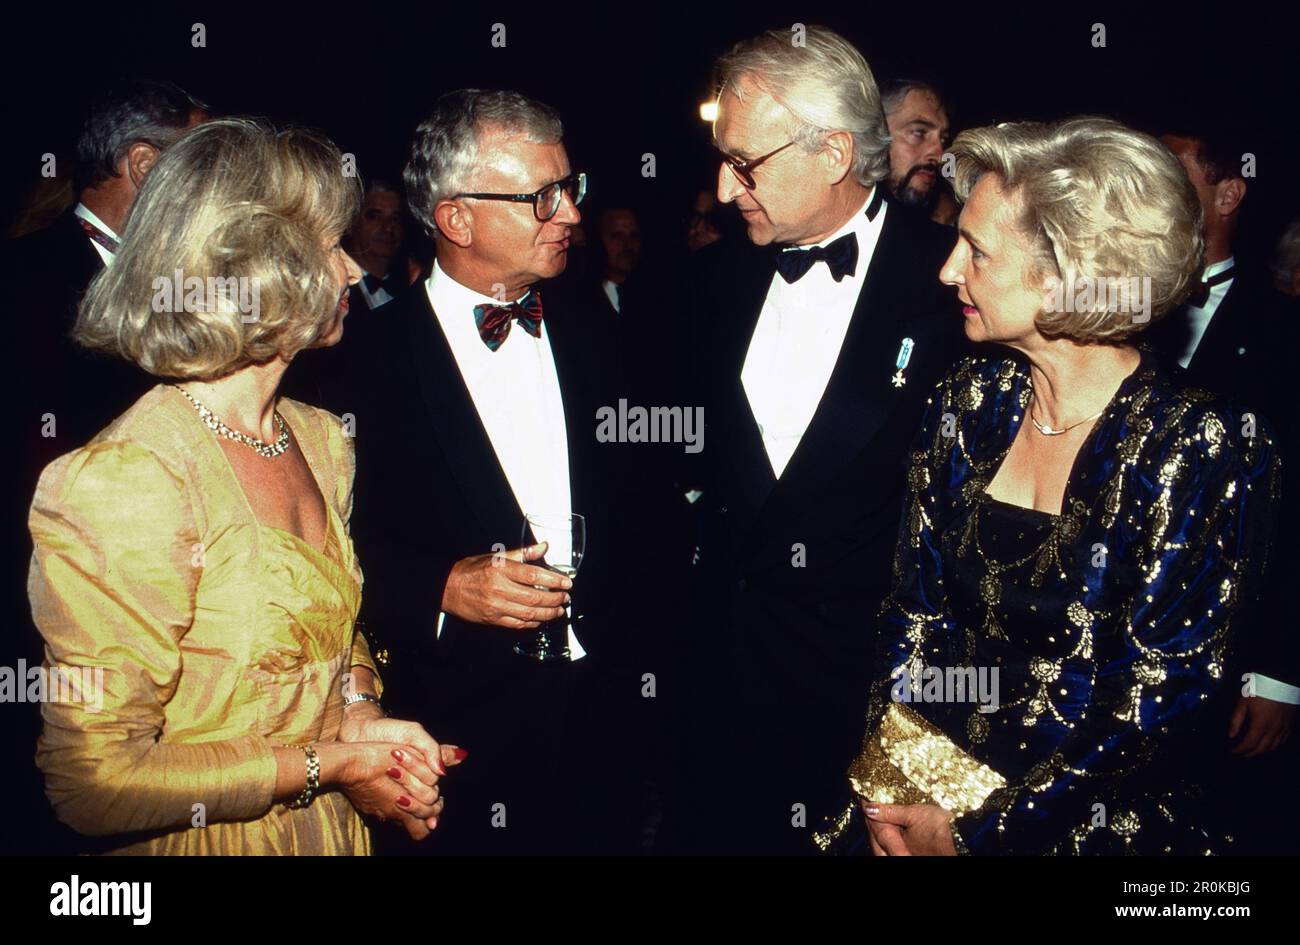 Ehepaar Brigitte und Rudolf Seiters mit Ehepaar Edmund und Karin Stoiber auf einer Abendveranstaltung, Deutschland um 1991. Stock Photo